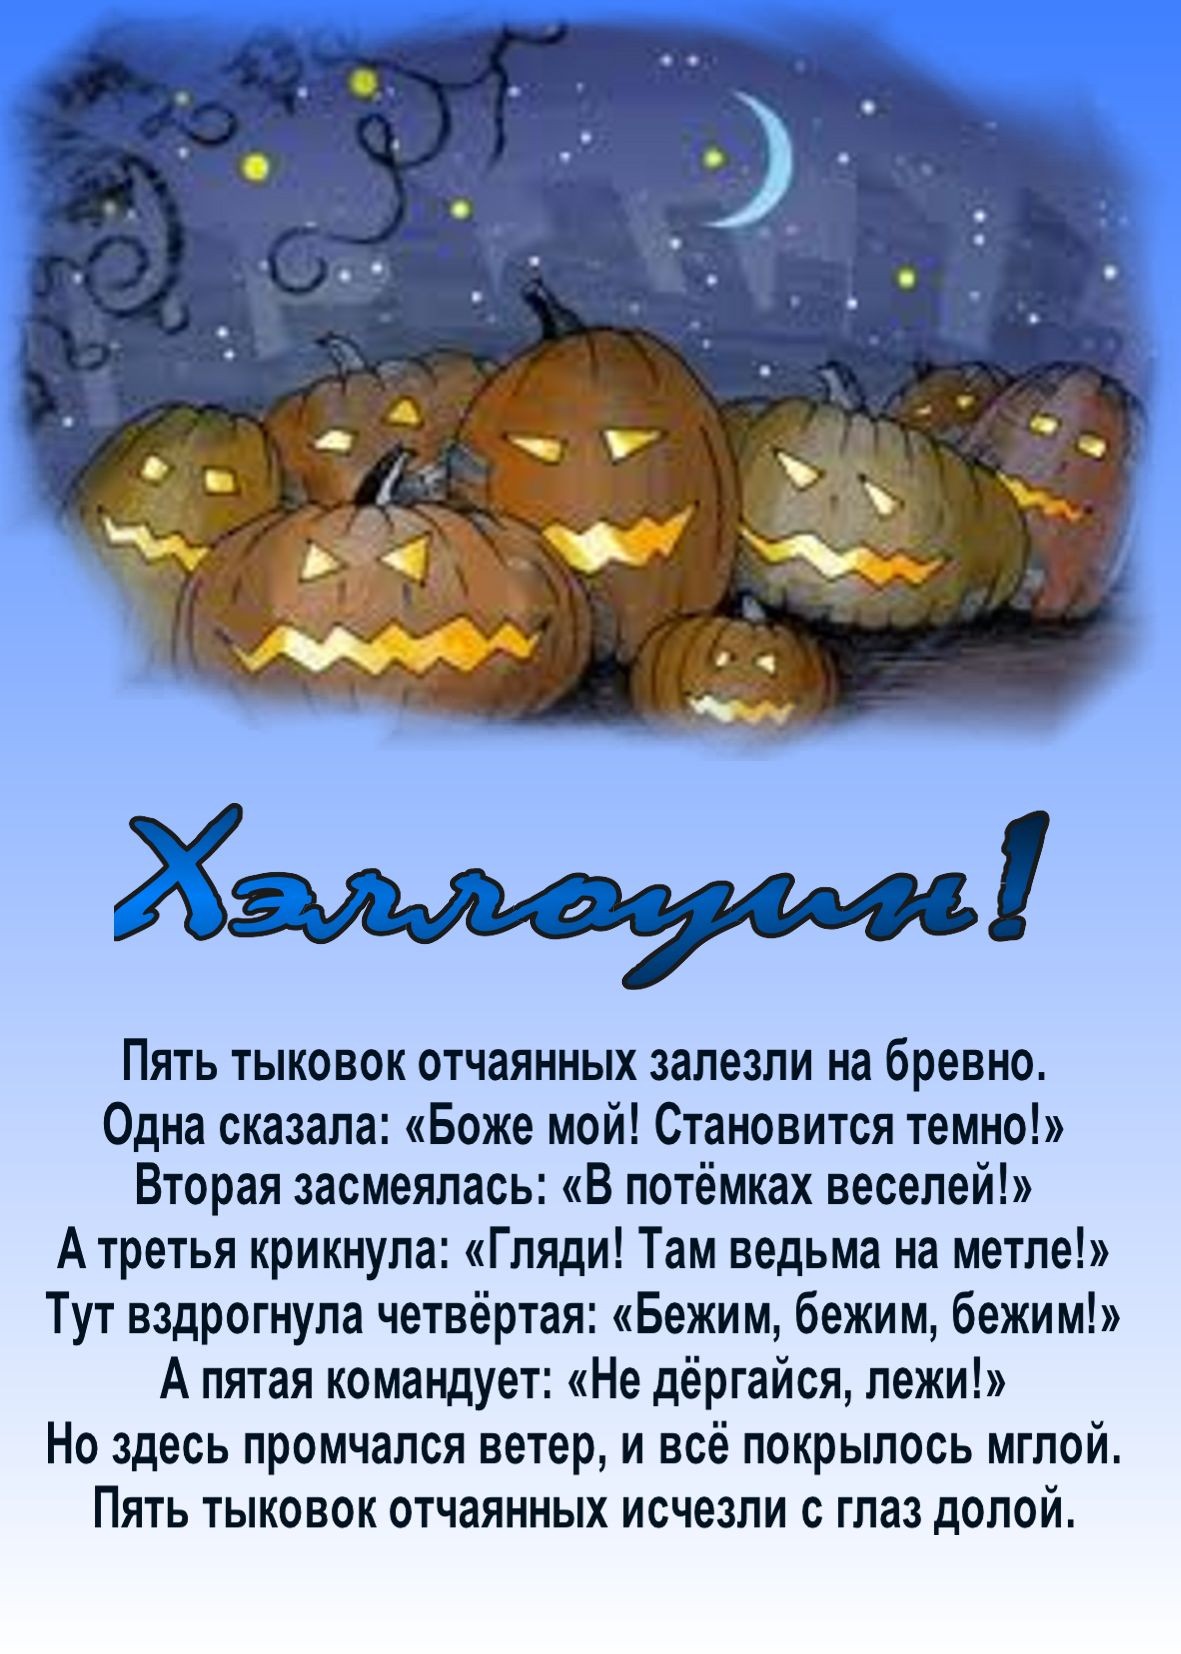 Прикольные поздравления и пожелания на хэллоуин